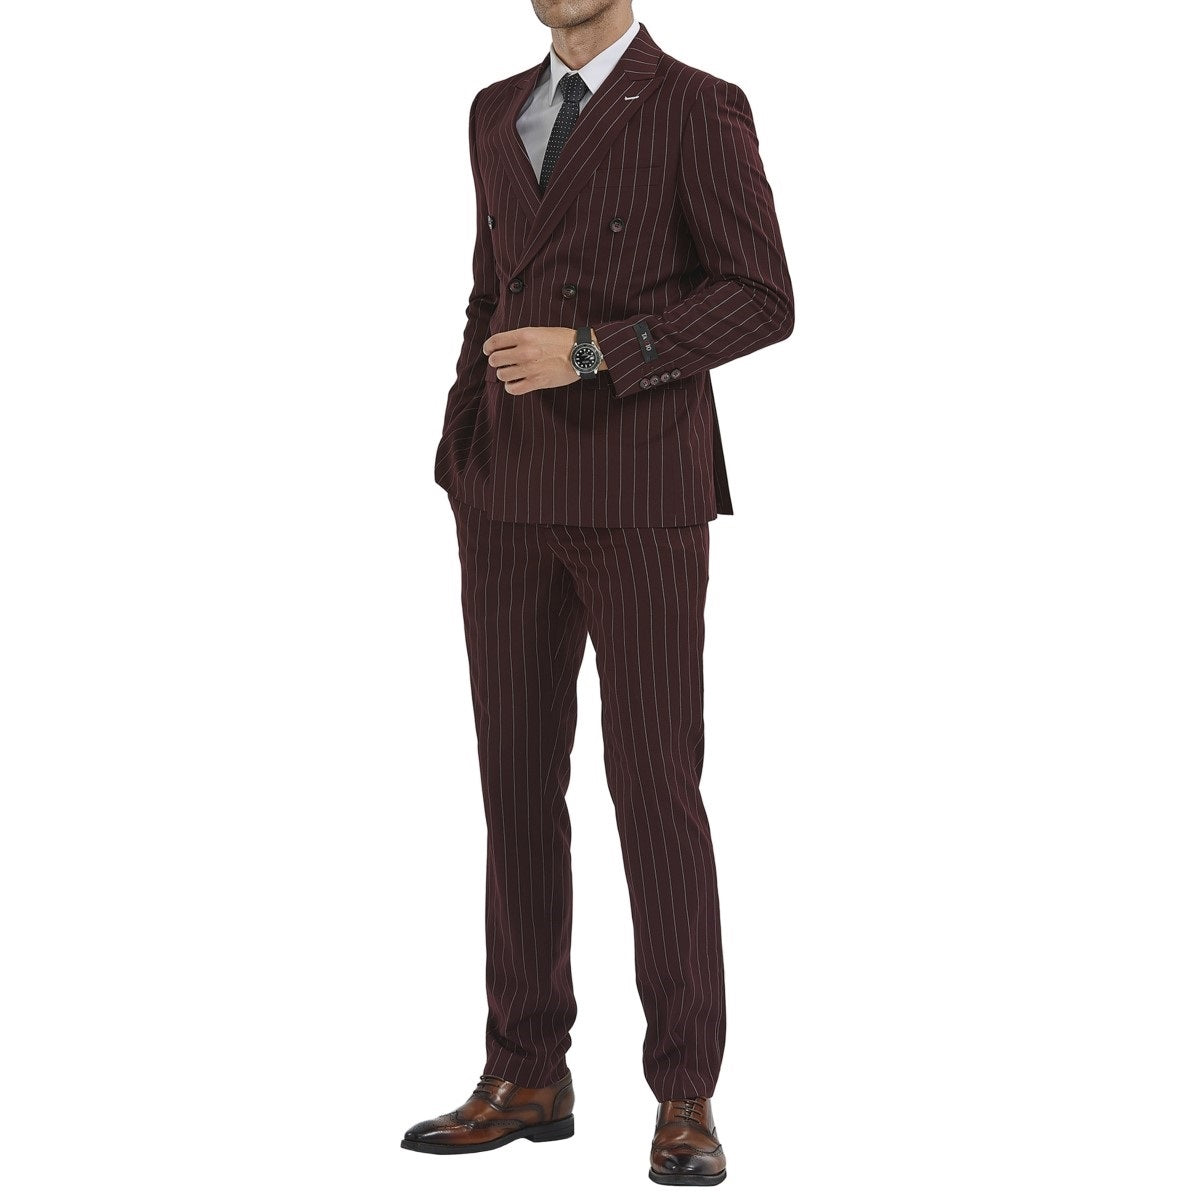 Traje Formal para Hombre TA-M340SK-05 - Formal Suit for Men